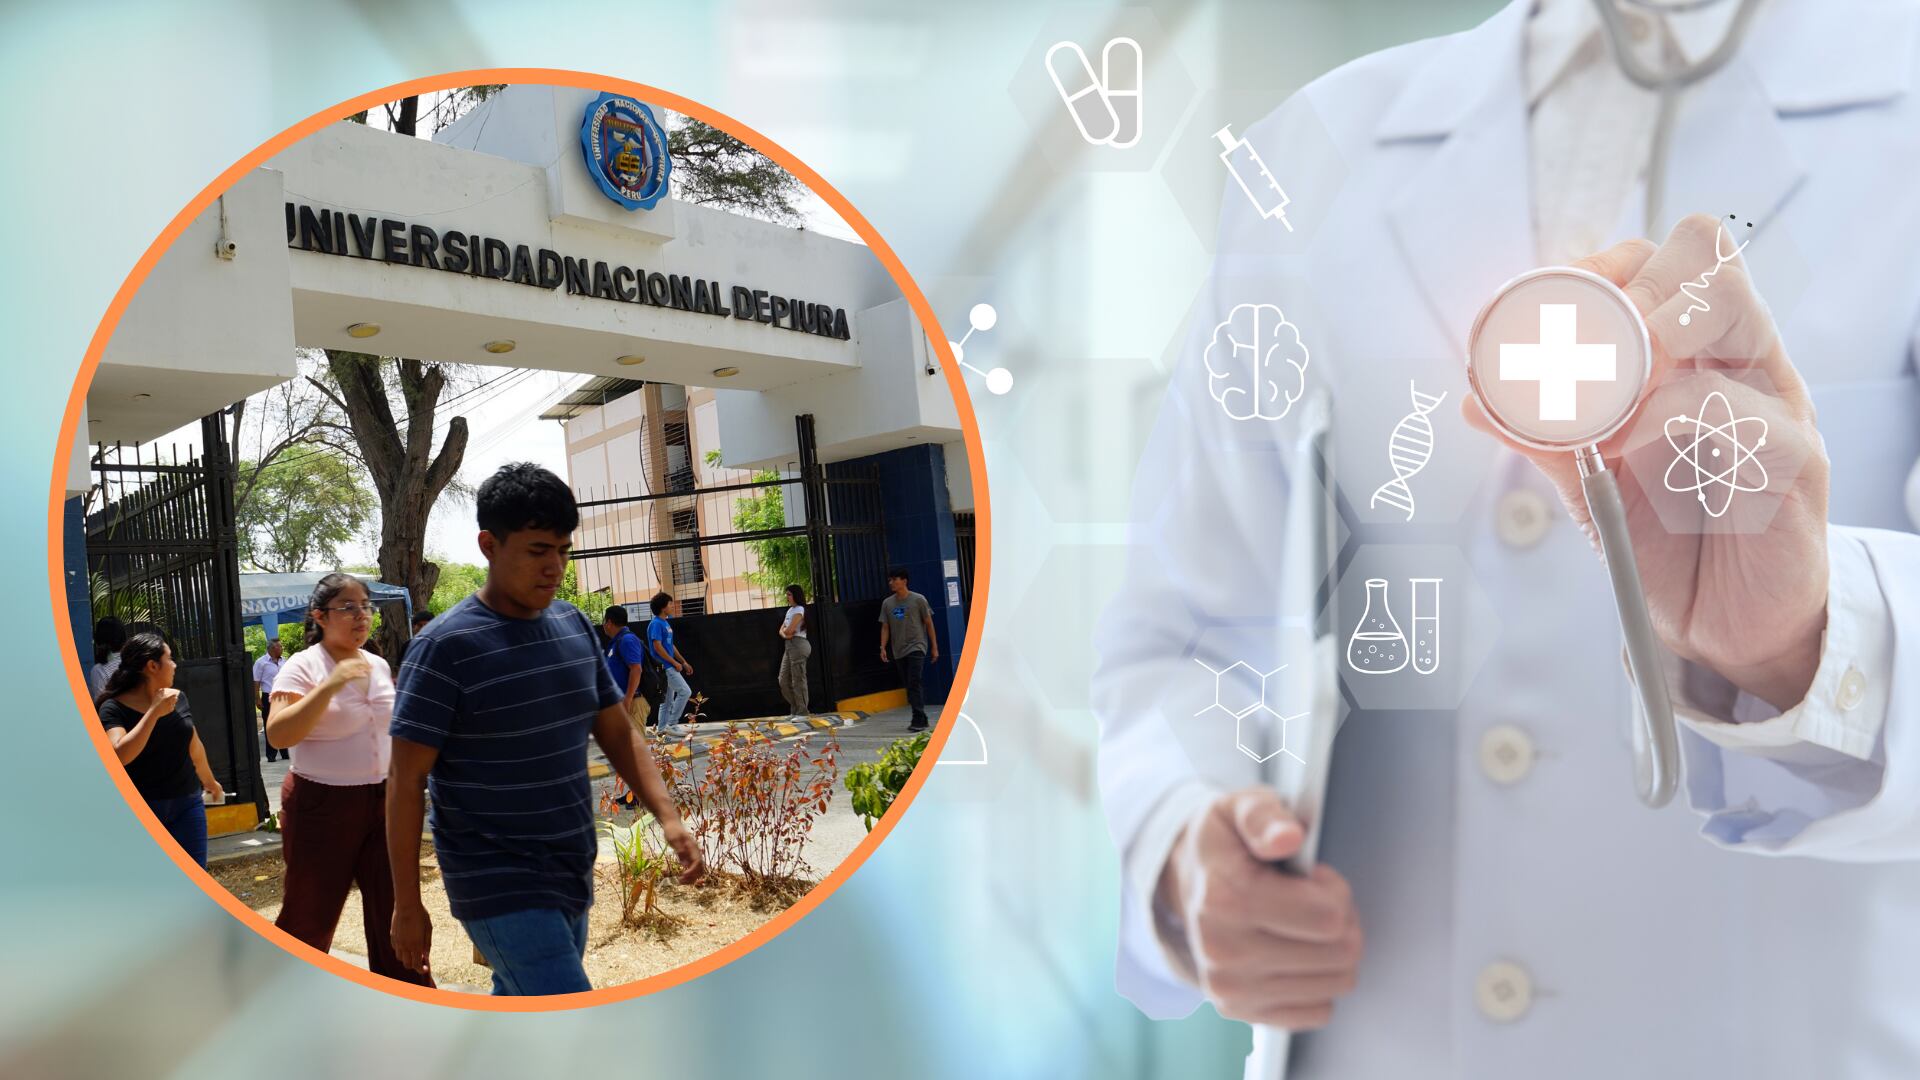 El examen de admisión de la UNP revela una situación única en la Facultad de Medicina Humana. (Composición: Infobae / Andina)